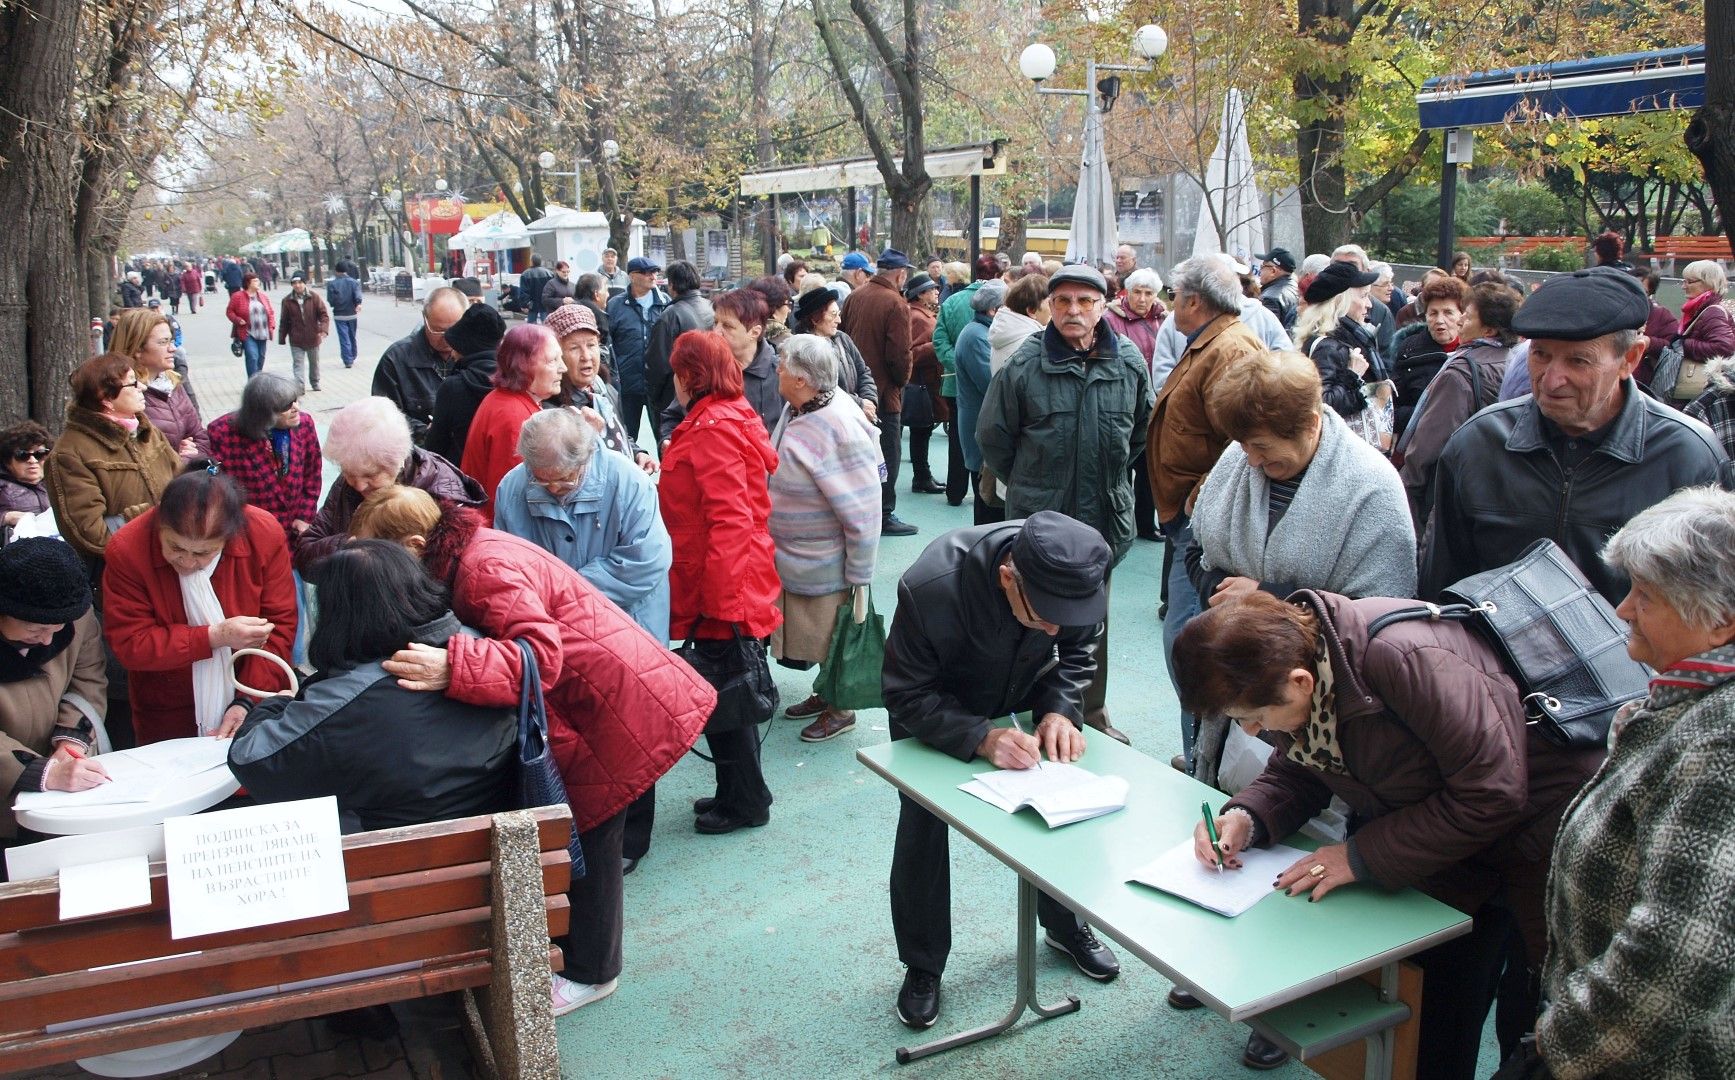 Сдружение "Съюз на пенсионерите-2004 Шумен" излязоха на 28 ноември на протестен митинг пред областната управа в града. Исканията са за преизчисляване на пенсиите за труд и възраст на всички пенсионери със средния осигурителен доход от 2018 г.